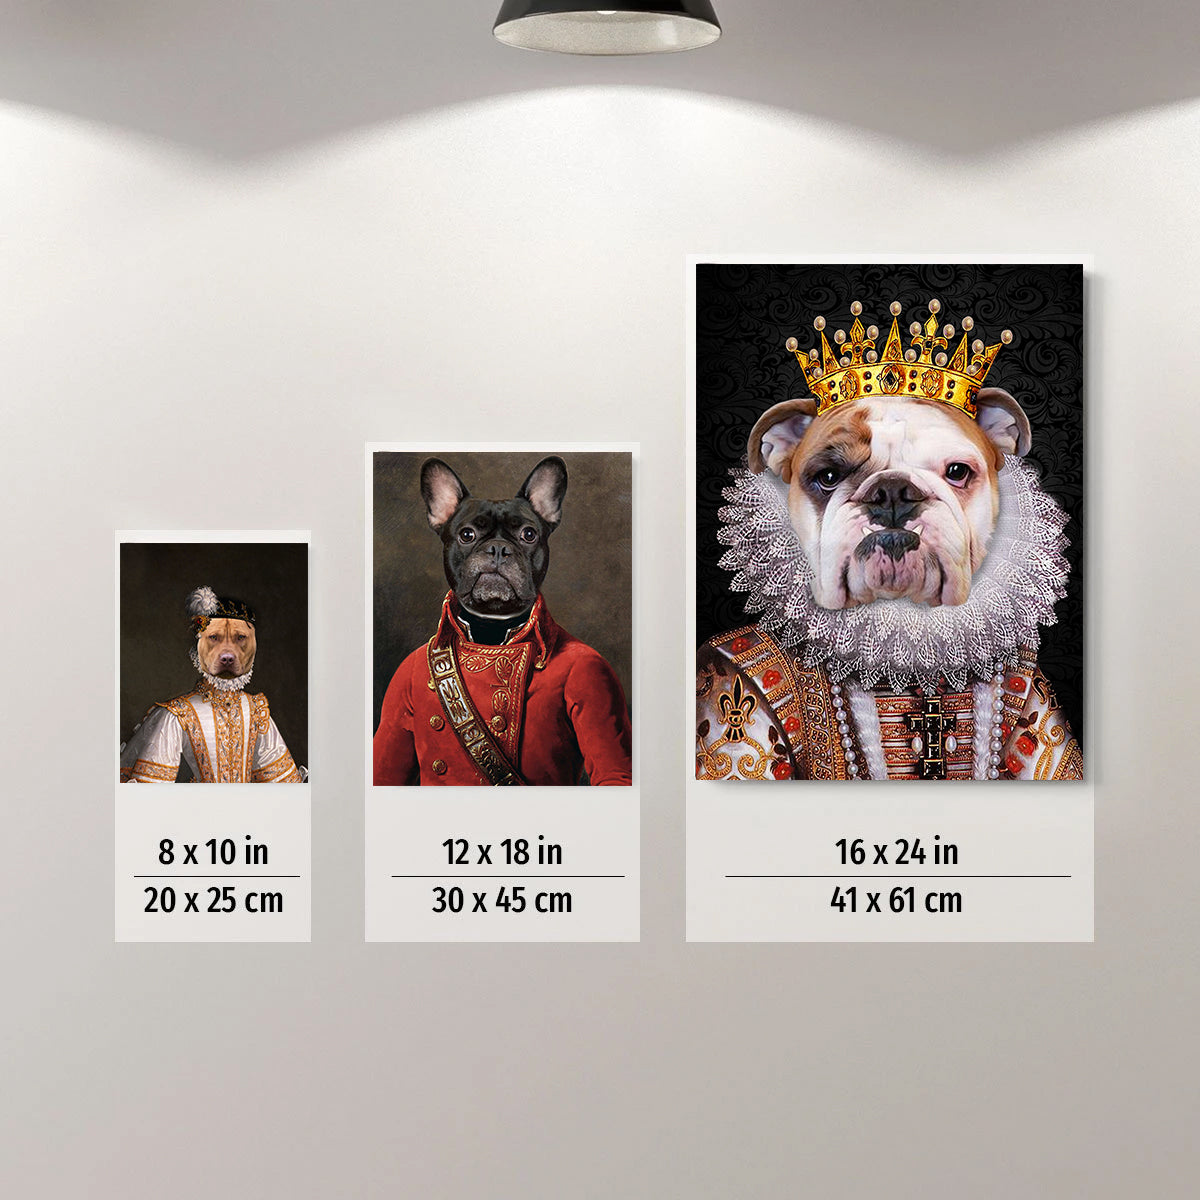 The Denver Fan Custom Poster Pet Portrait - Noble Pawtrait